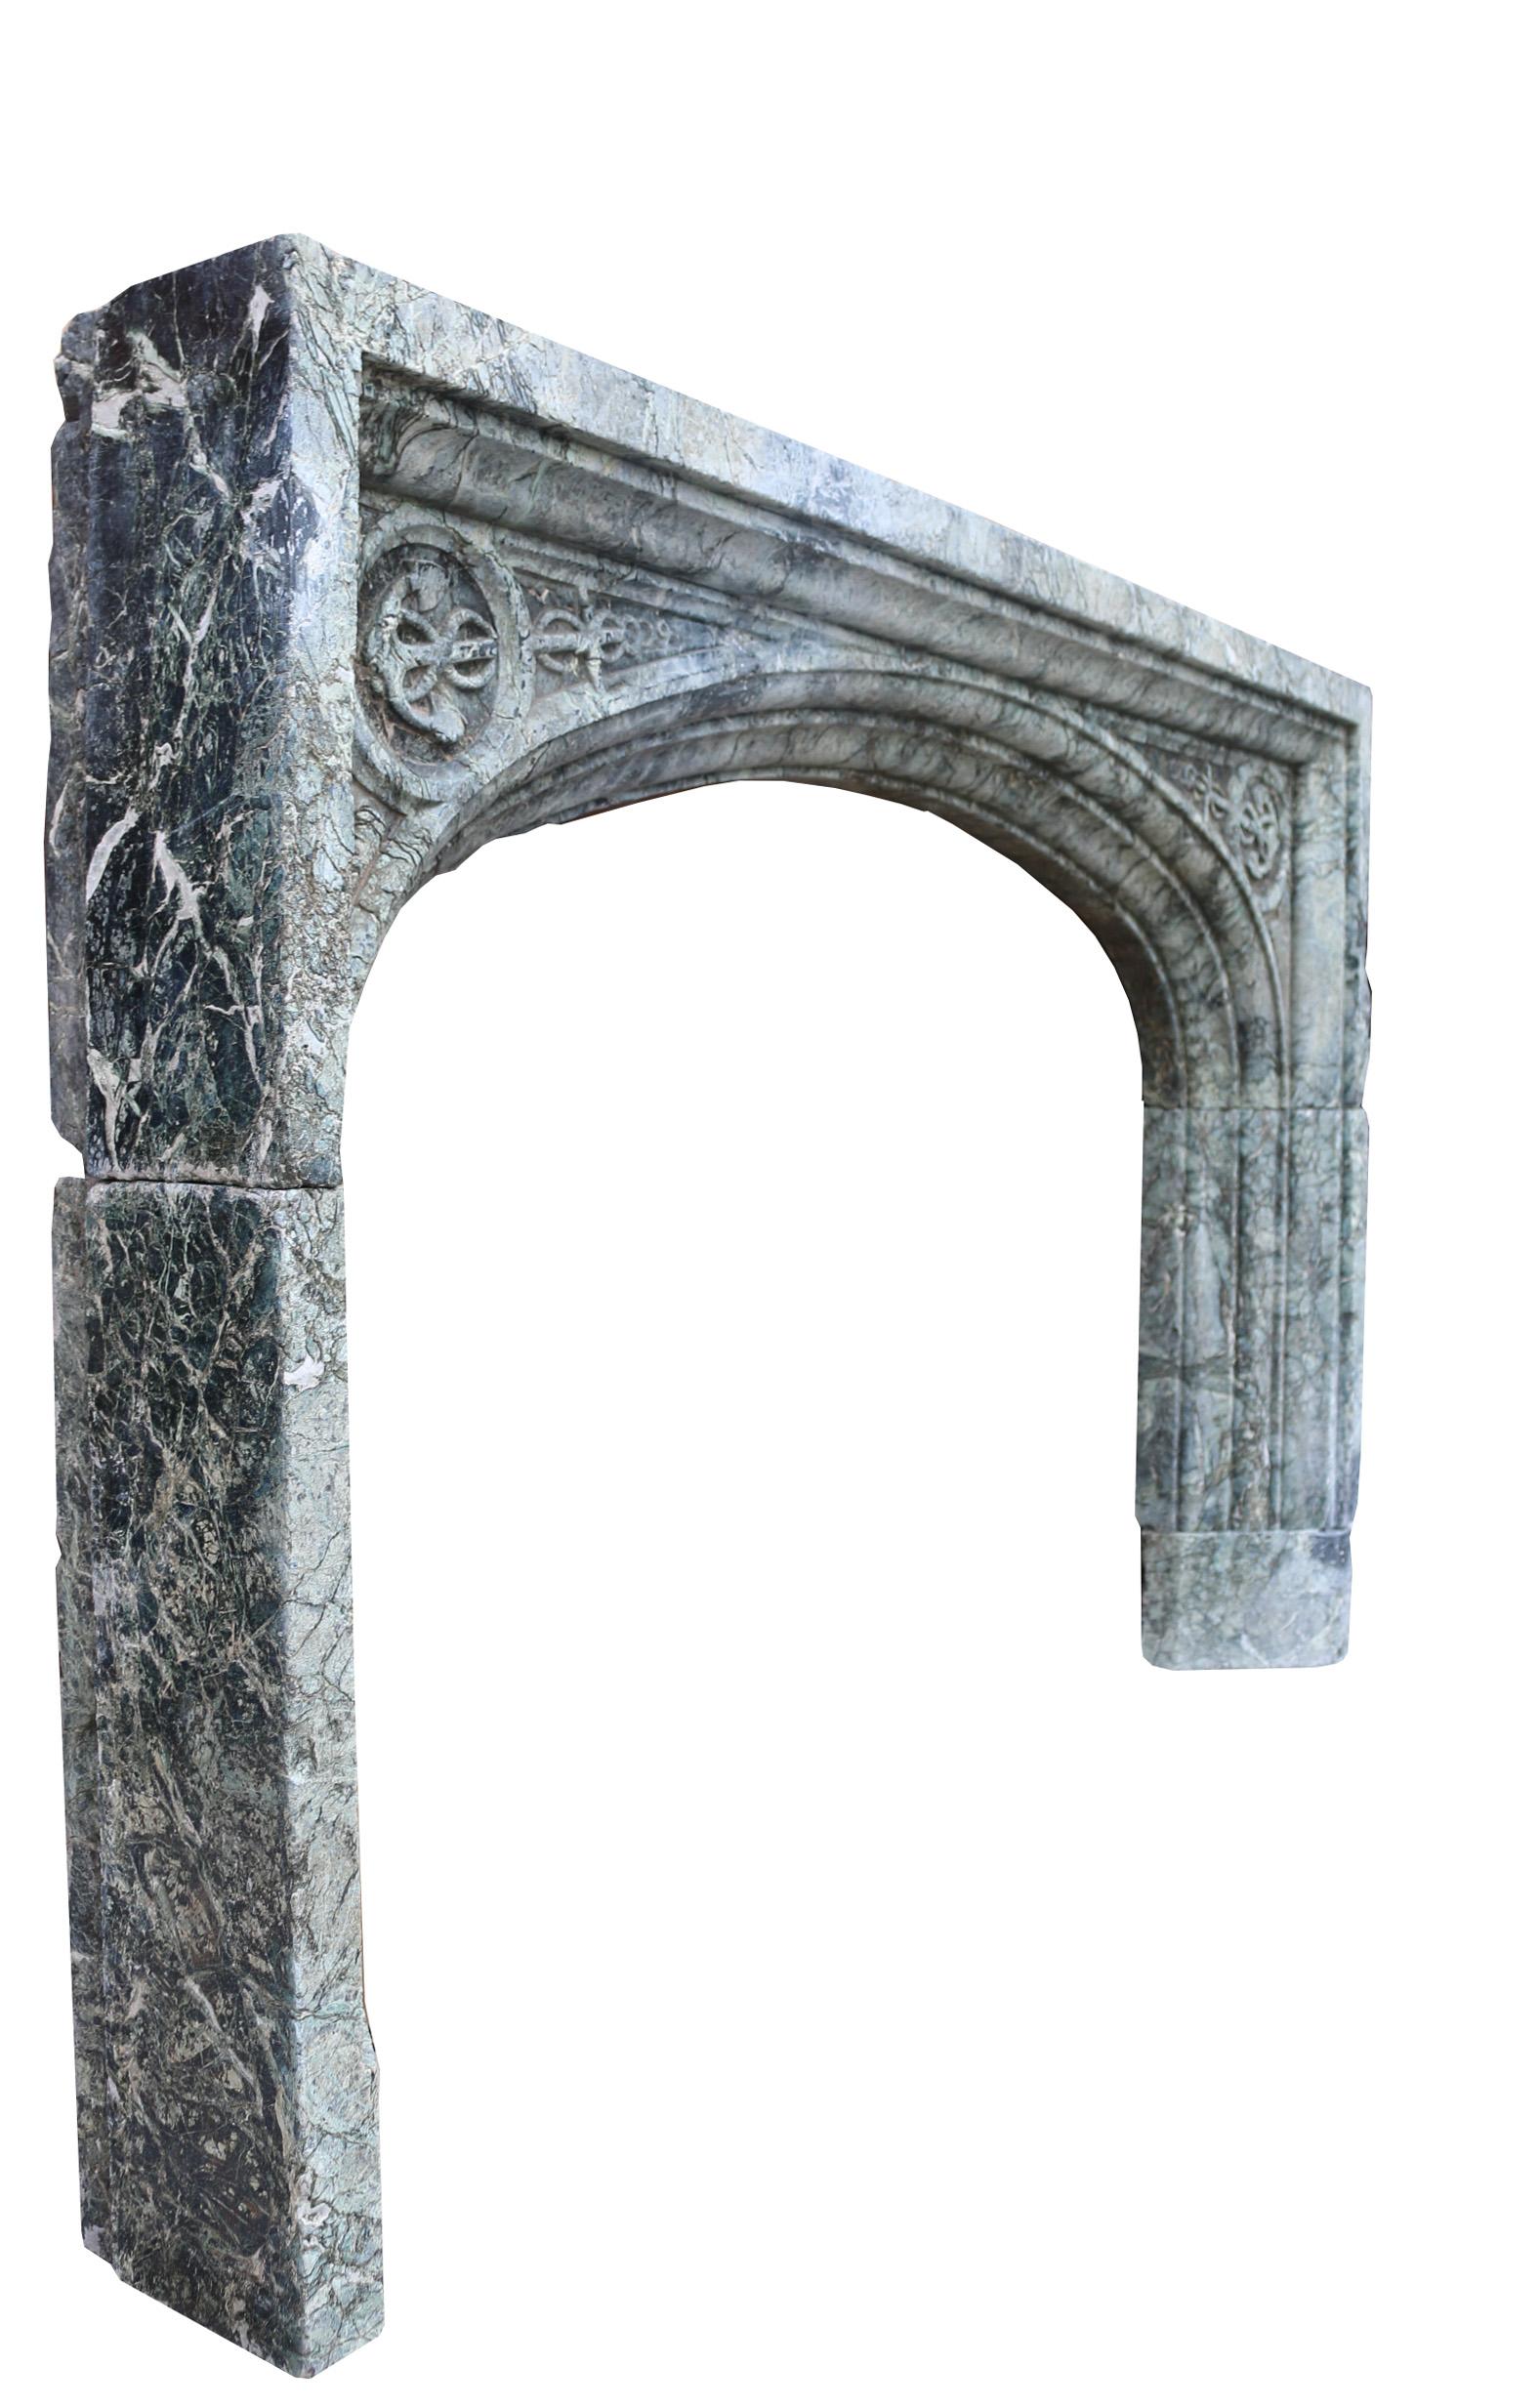 Intéressant entourage de cheminée en marbre vert Maurin du XIXe siècle, avec des ancres sculptées dans des rondeaux de chaque côté de l'arc.

Mesures : profondeur 20 cm (total) 15 cm (visible une fois installé)

Hauteur d'ouverture 89